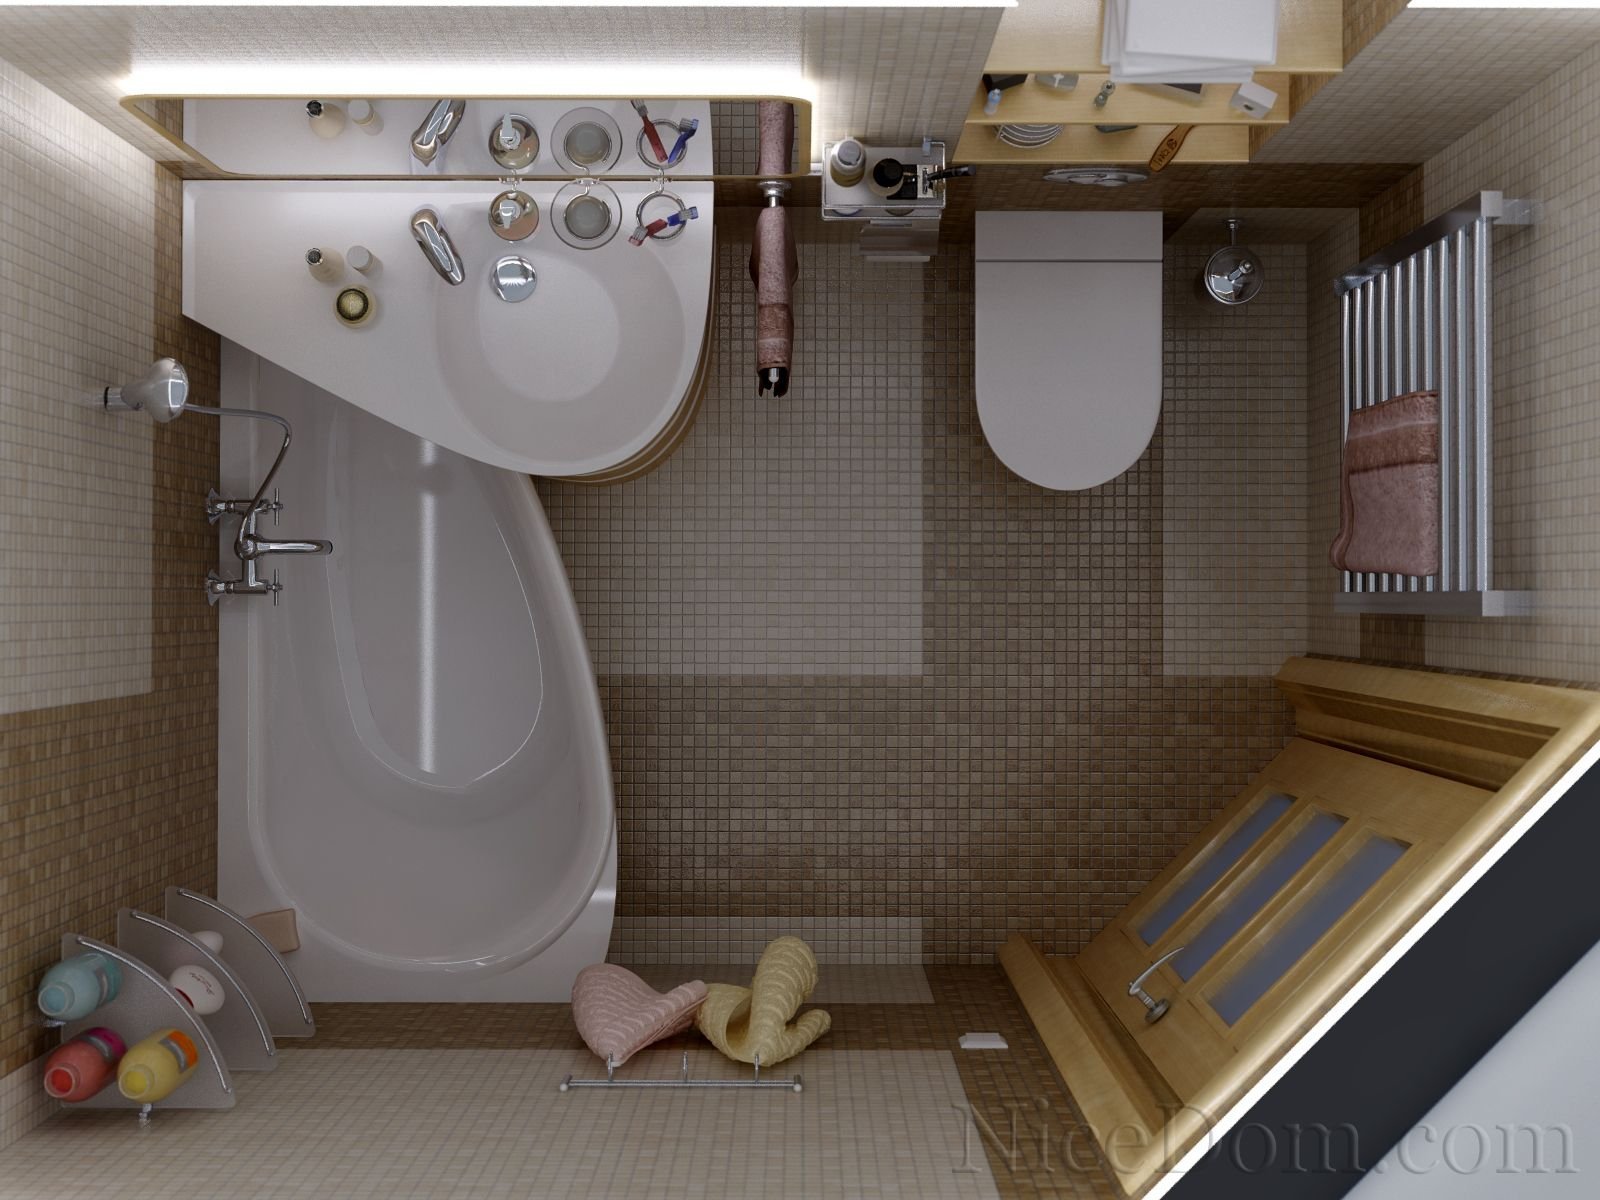 Хрущевка ванная комната совмещенная с туалетом. Санузел 4 кв м 2,5х1,5 с душевой кабиной. Перепланировка ванной комнаты. Совмещеныцсанузел в хрущевке. Ванная с туалетом в хрущевке.